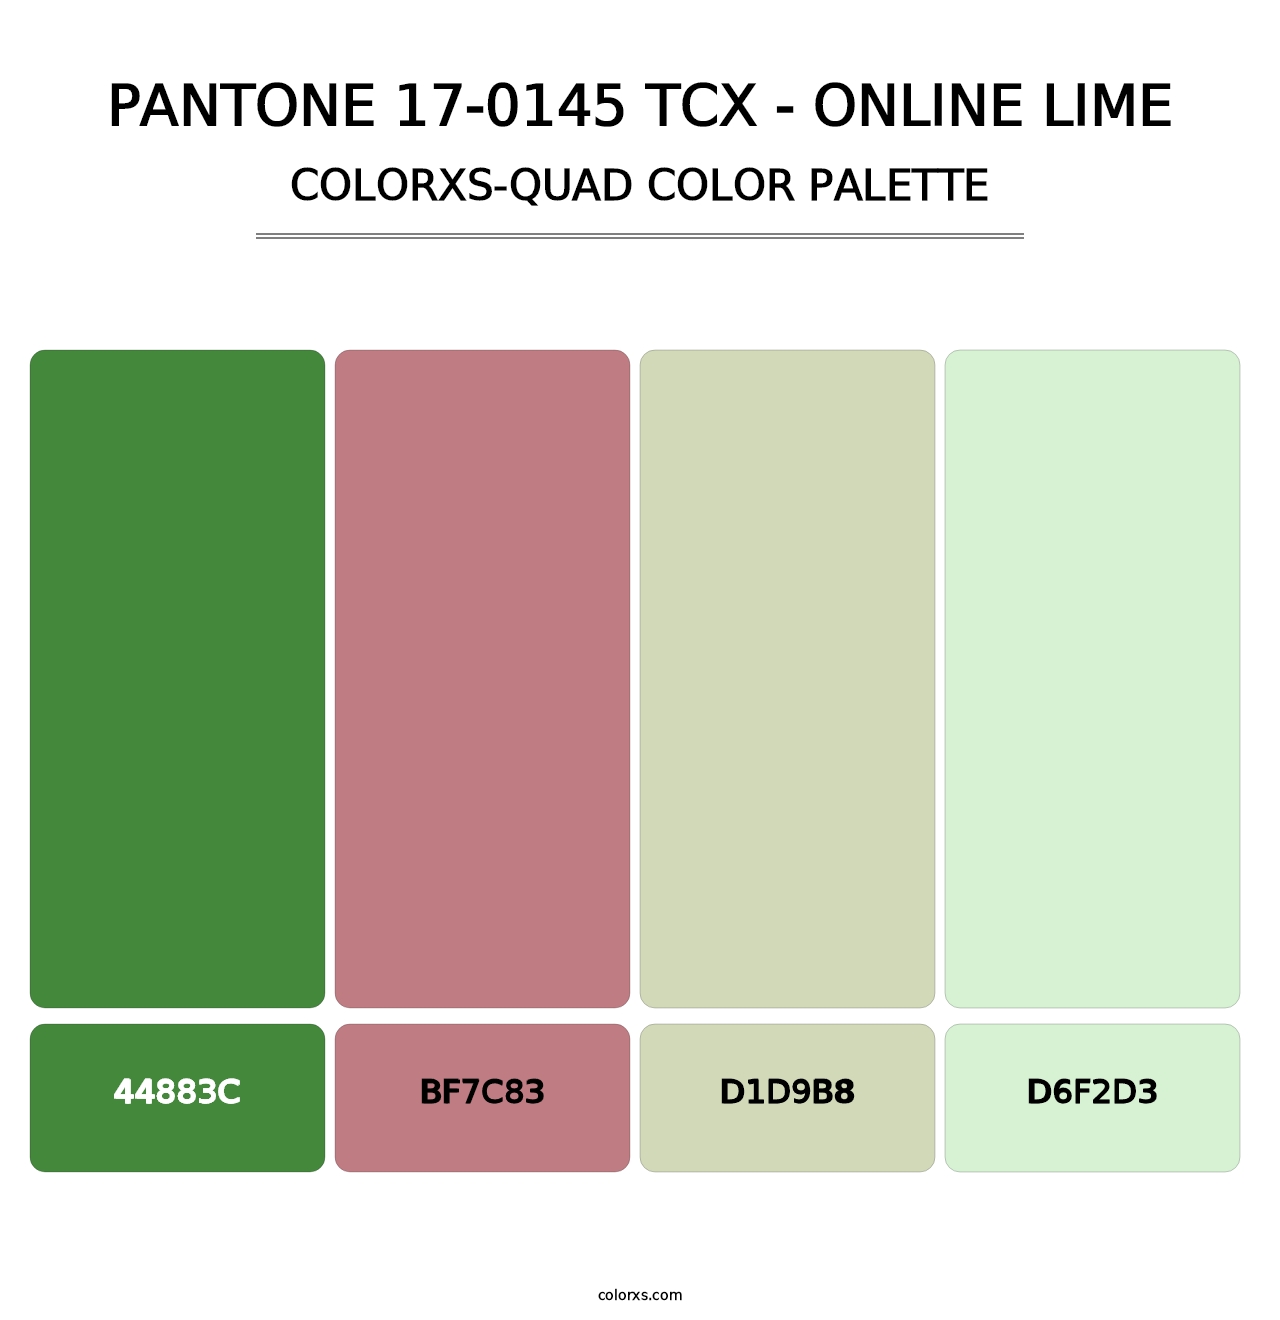 PANTONE 17-0145 TCX - Online Lime - Colorxs Quad Palette